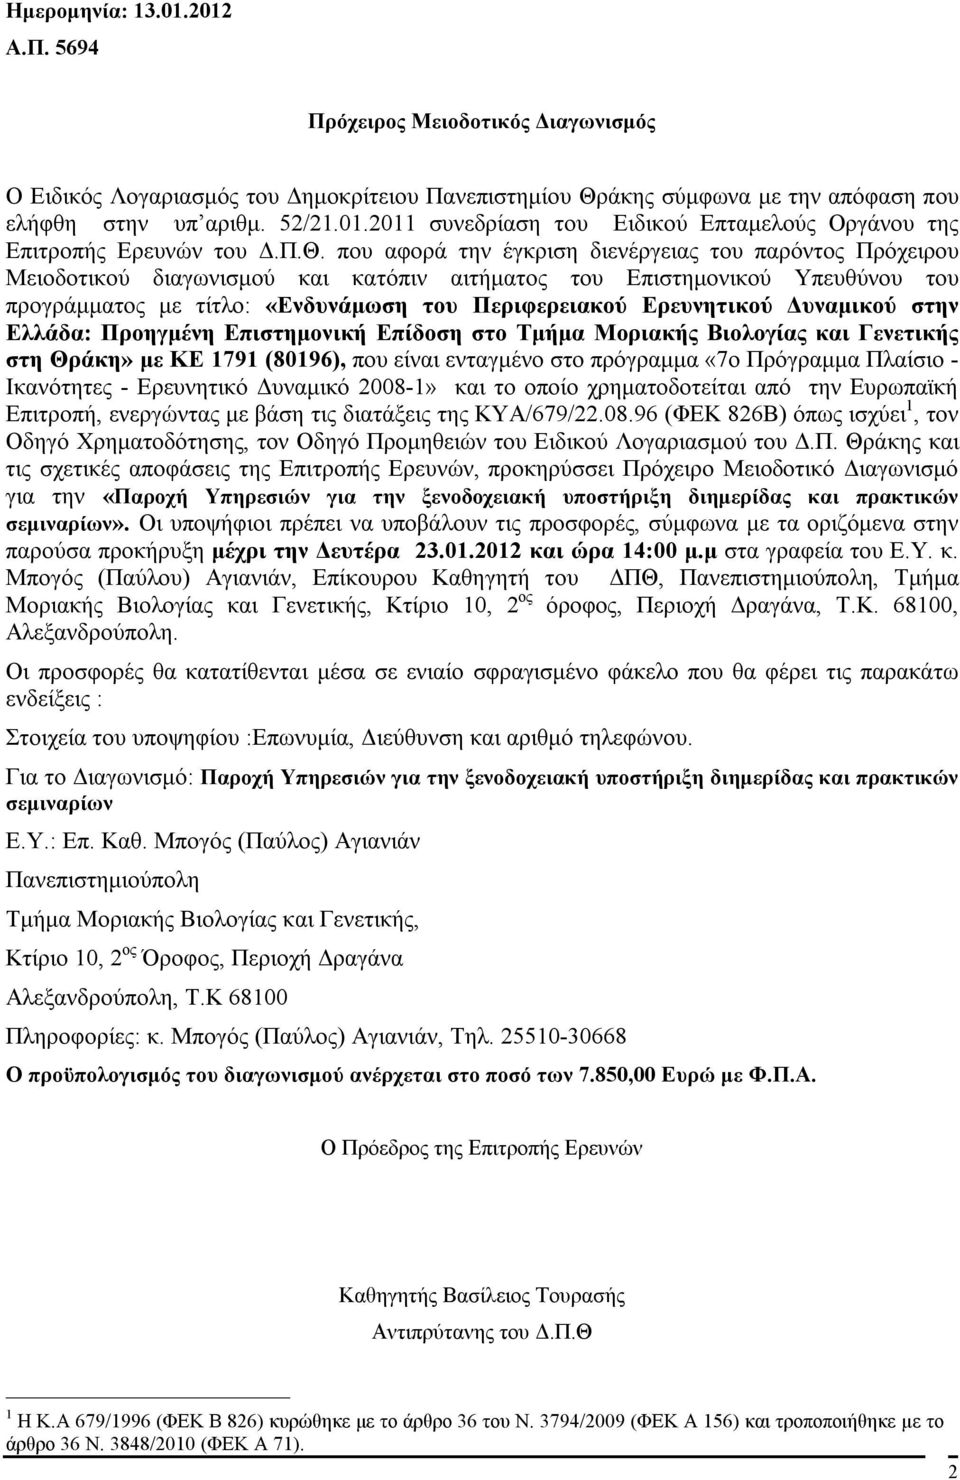 Ερευνητικού Δυναμικού στην Ελλάδα: Προηγμένη Επιστημονική Επίδοση στο Τμήμα Μοριακής Βιολογίας και Γενετικής στη Θράκη» με ΚΕ 1791 (80196), που είναι ενταγμένο στο πρόγραμμα «7ο Πρόγραμμα Πλαίσιο -